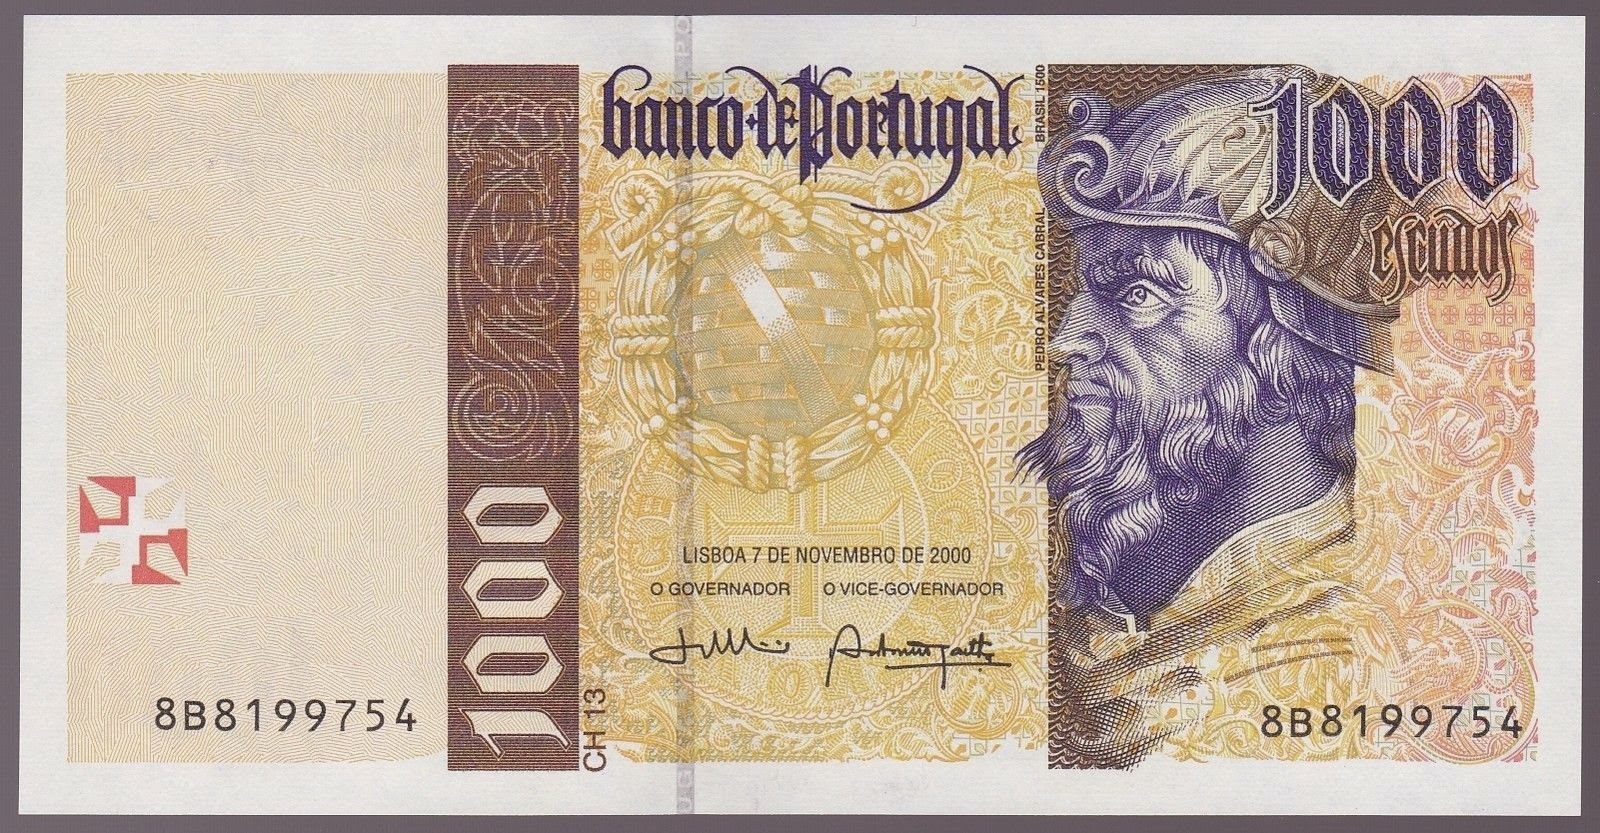 Portugal Banknotes 1000 Escudos banknote 2000 Pedro Alvares Cabral